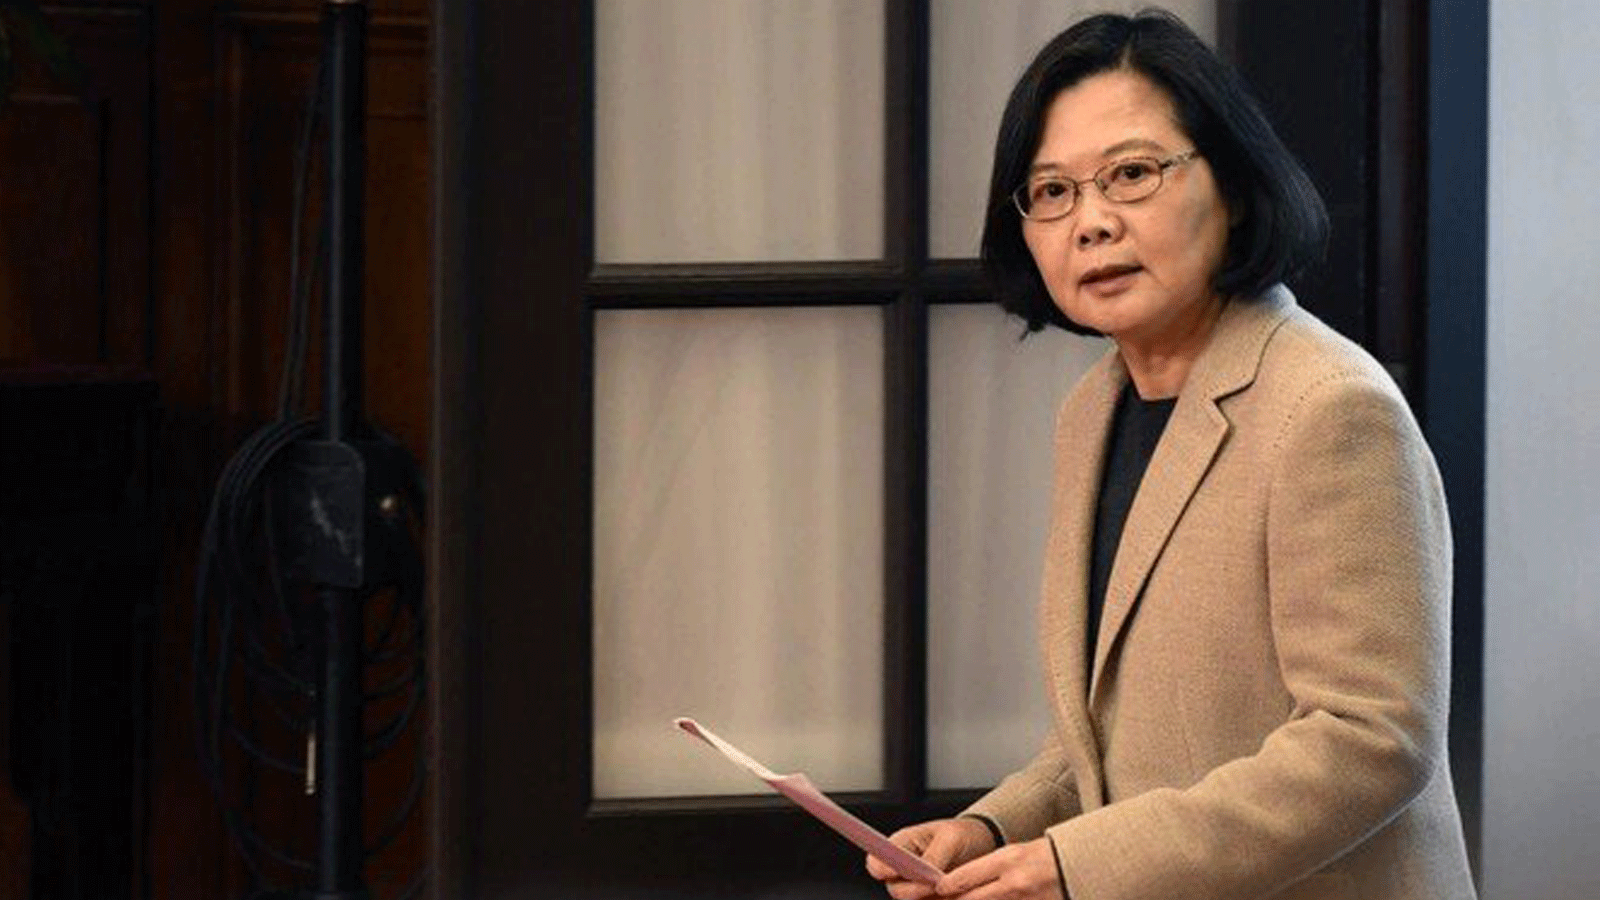 الرئيسة التايوانية تساي إنغ ون تُحذّر المسؤولين التايوانيين من الدخول في أي حوار سري مع الصين في خطاب ألقته بمناسبة العام الجديد.في كانون الثاني/ يناير 2019